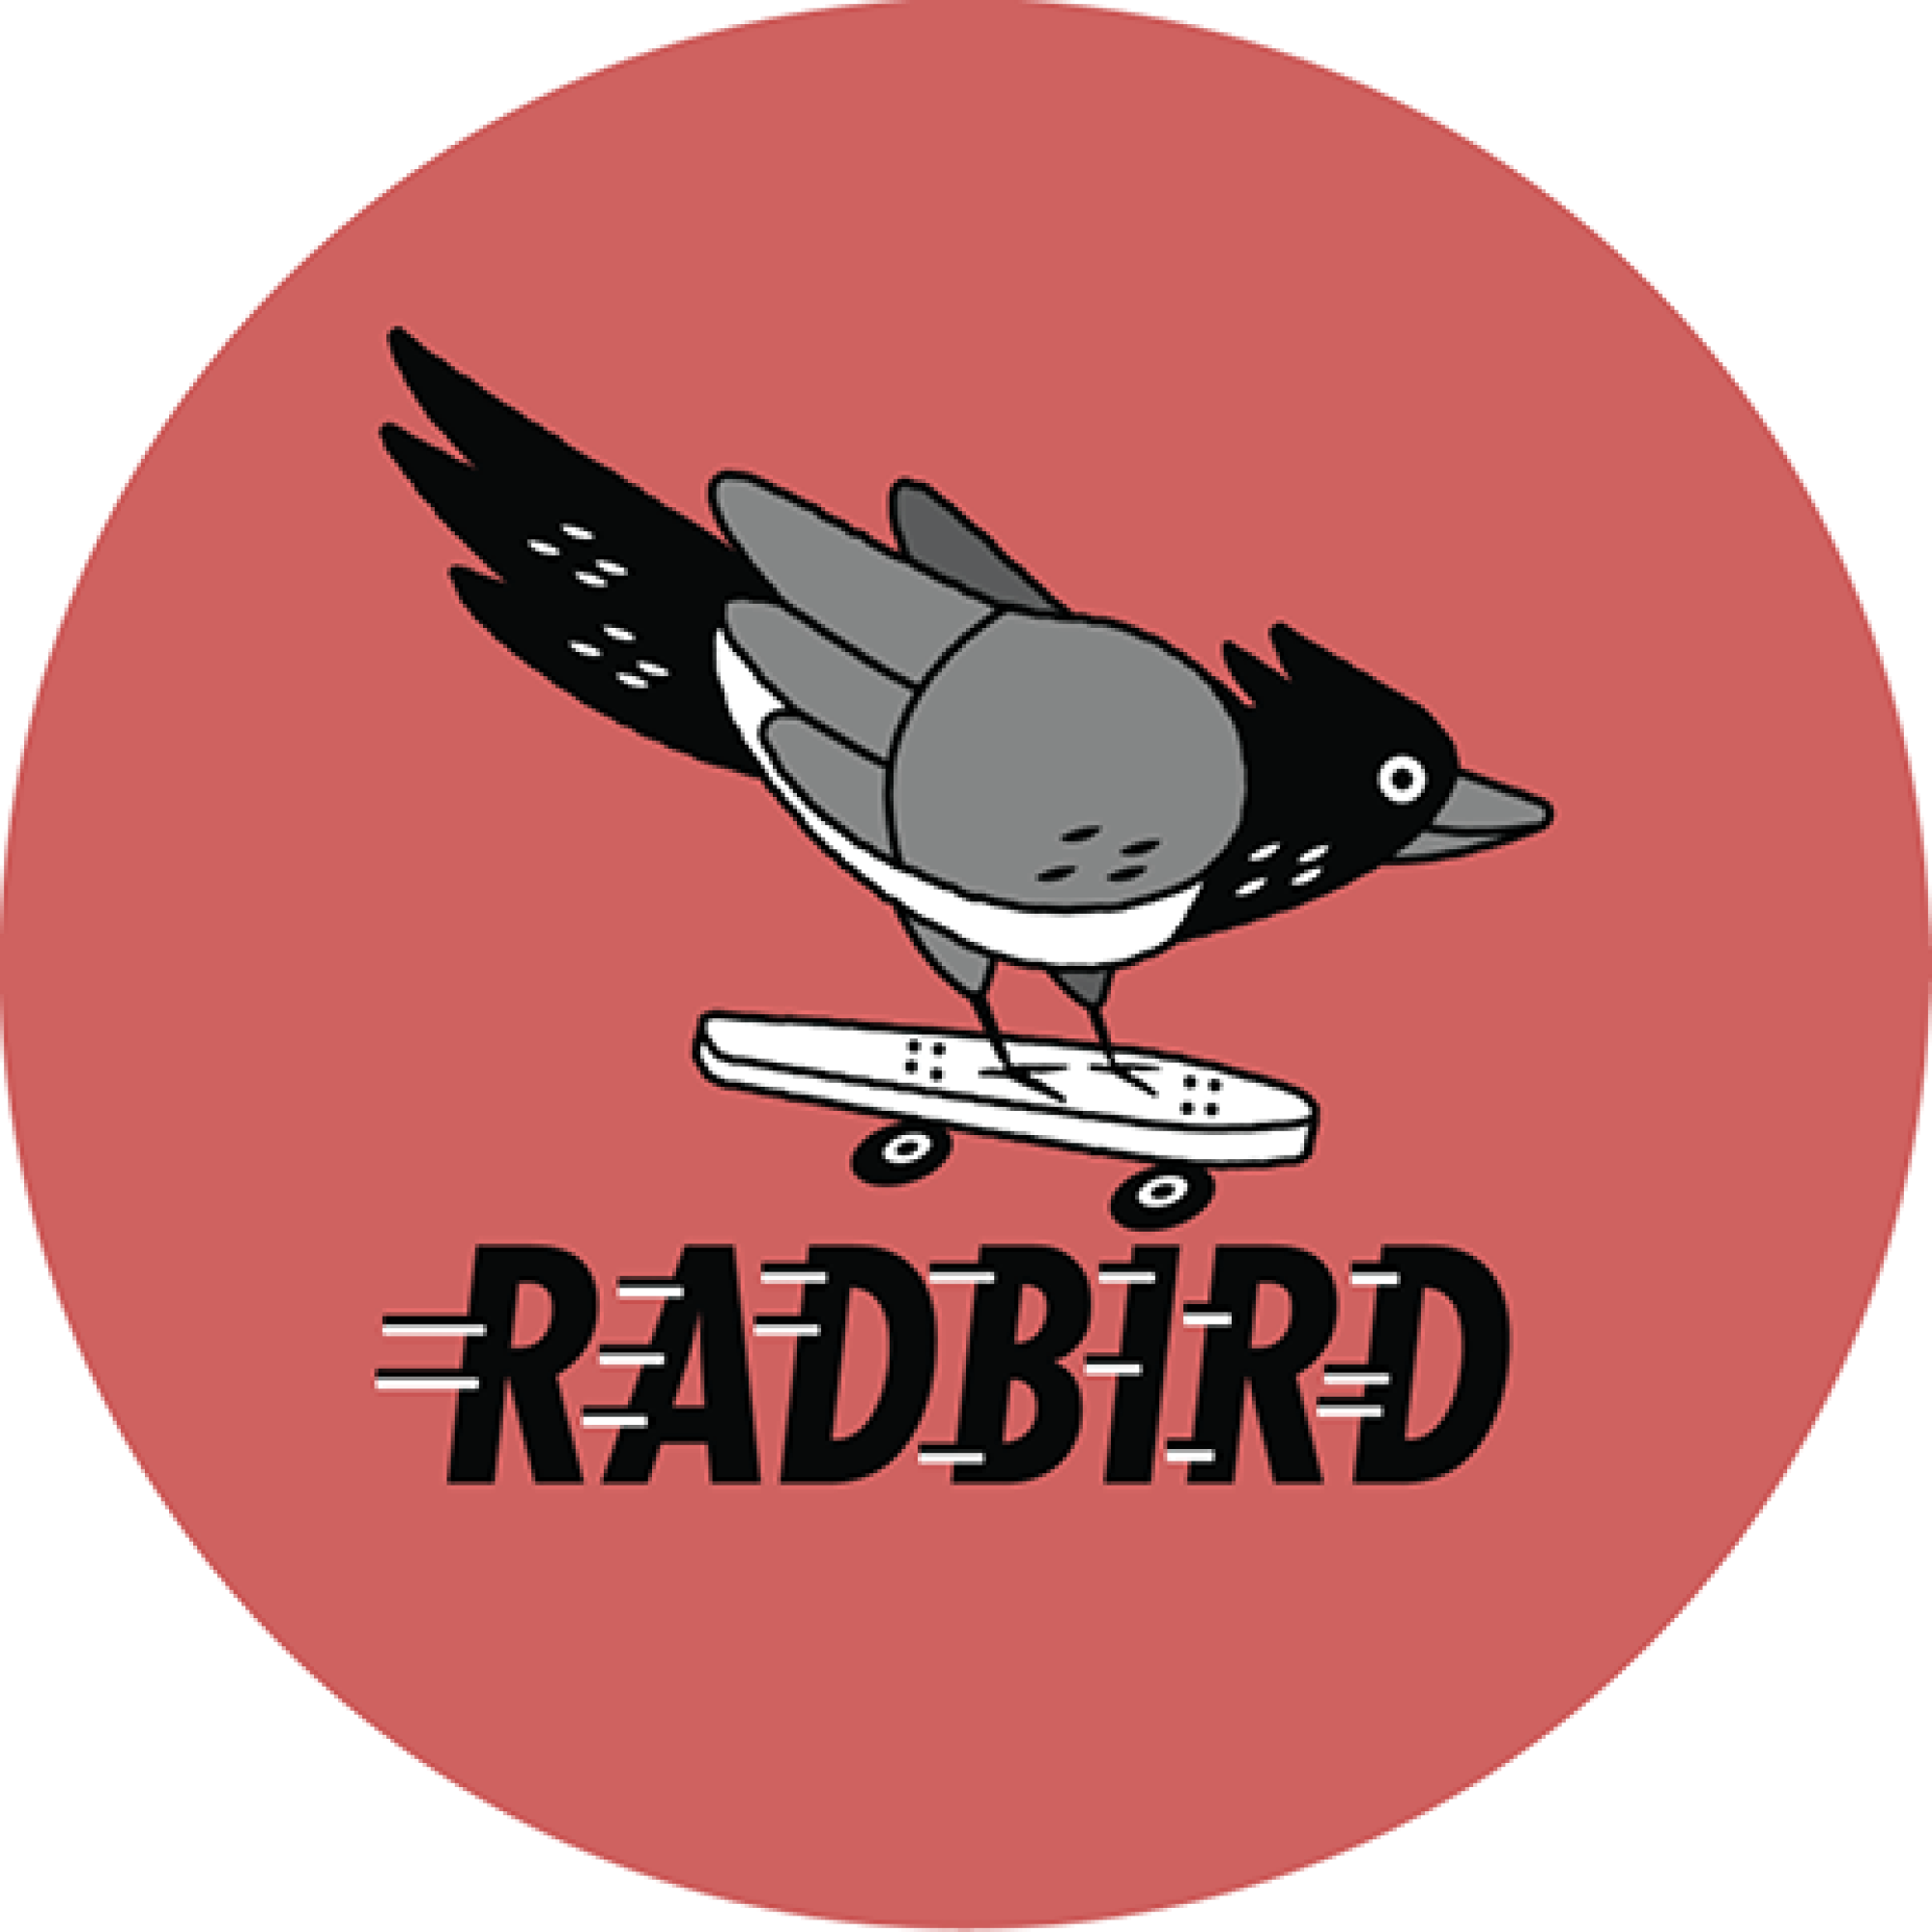 Radbird